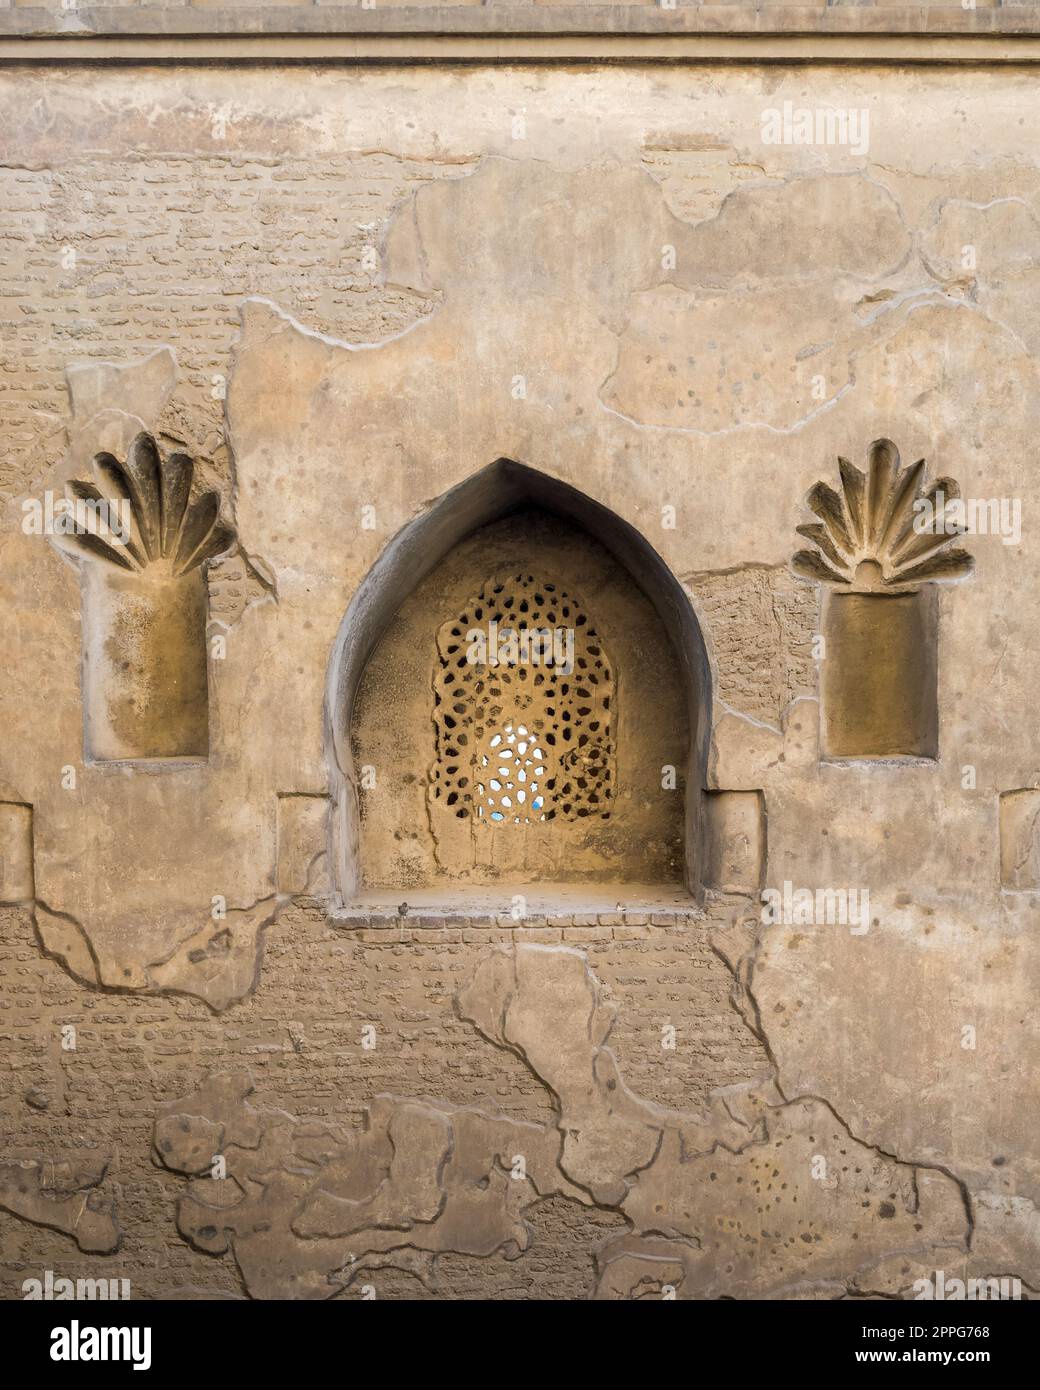 Fenêtre en stuc arqué perforé ornée de motifs floraux, mur extérieur de la mosquée d'Ibn Tulun, Caire médiéval, Égypte Banque D'Images